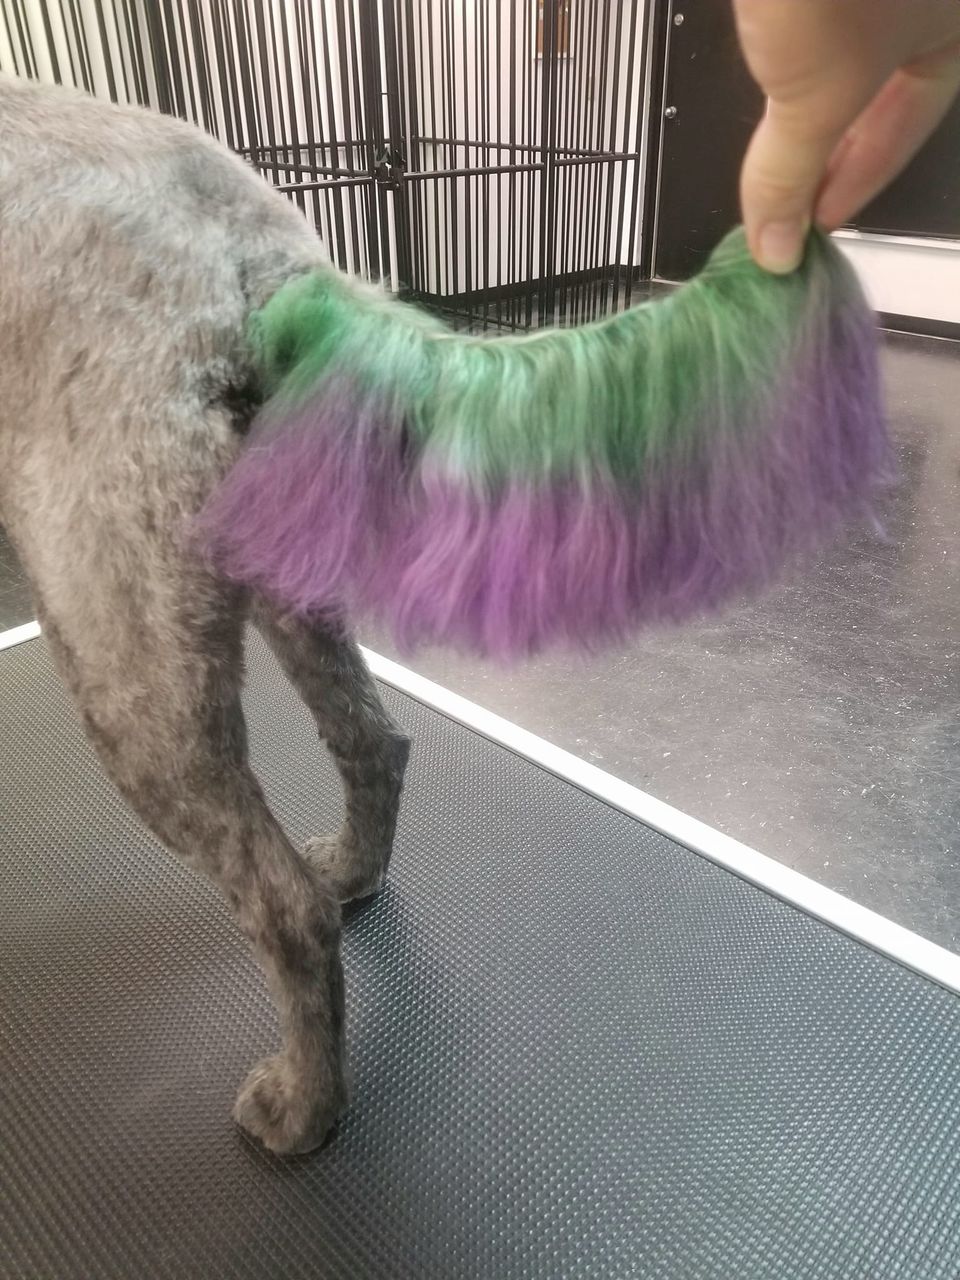 safe dog dye pet grooming